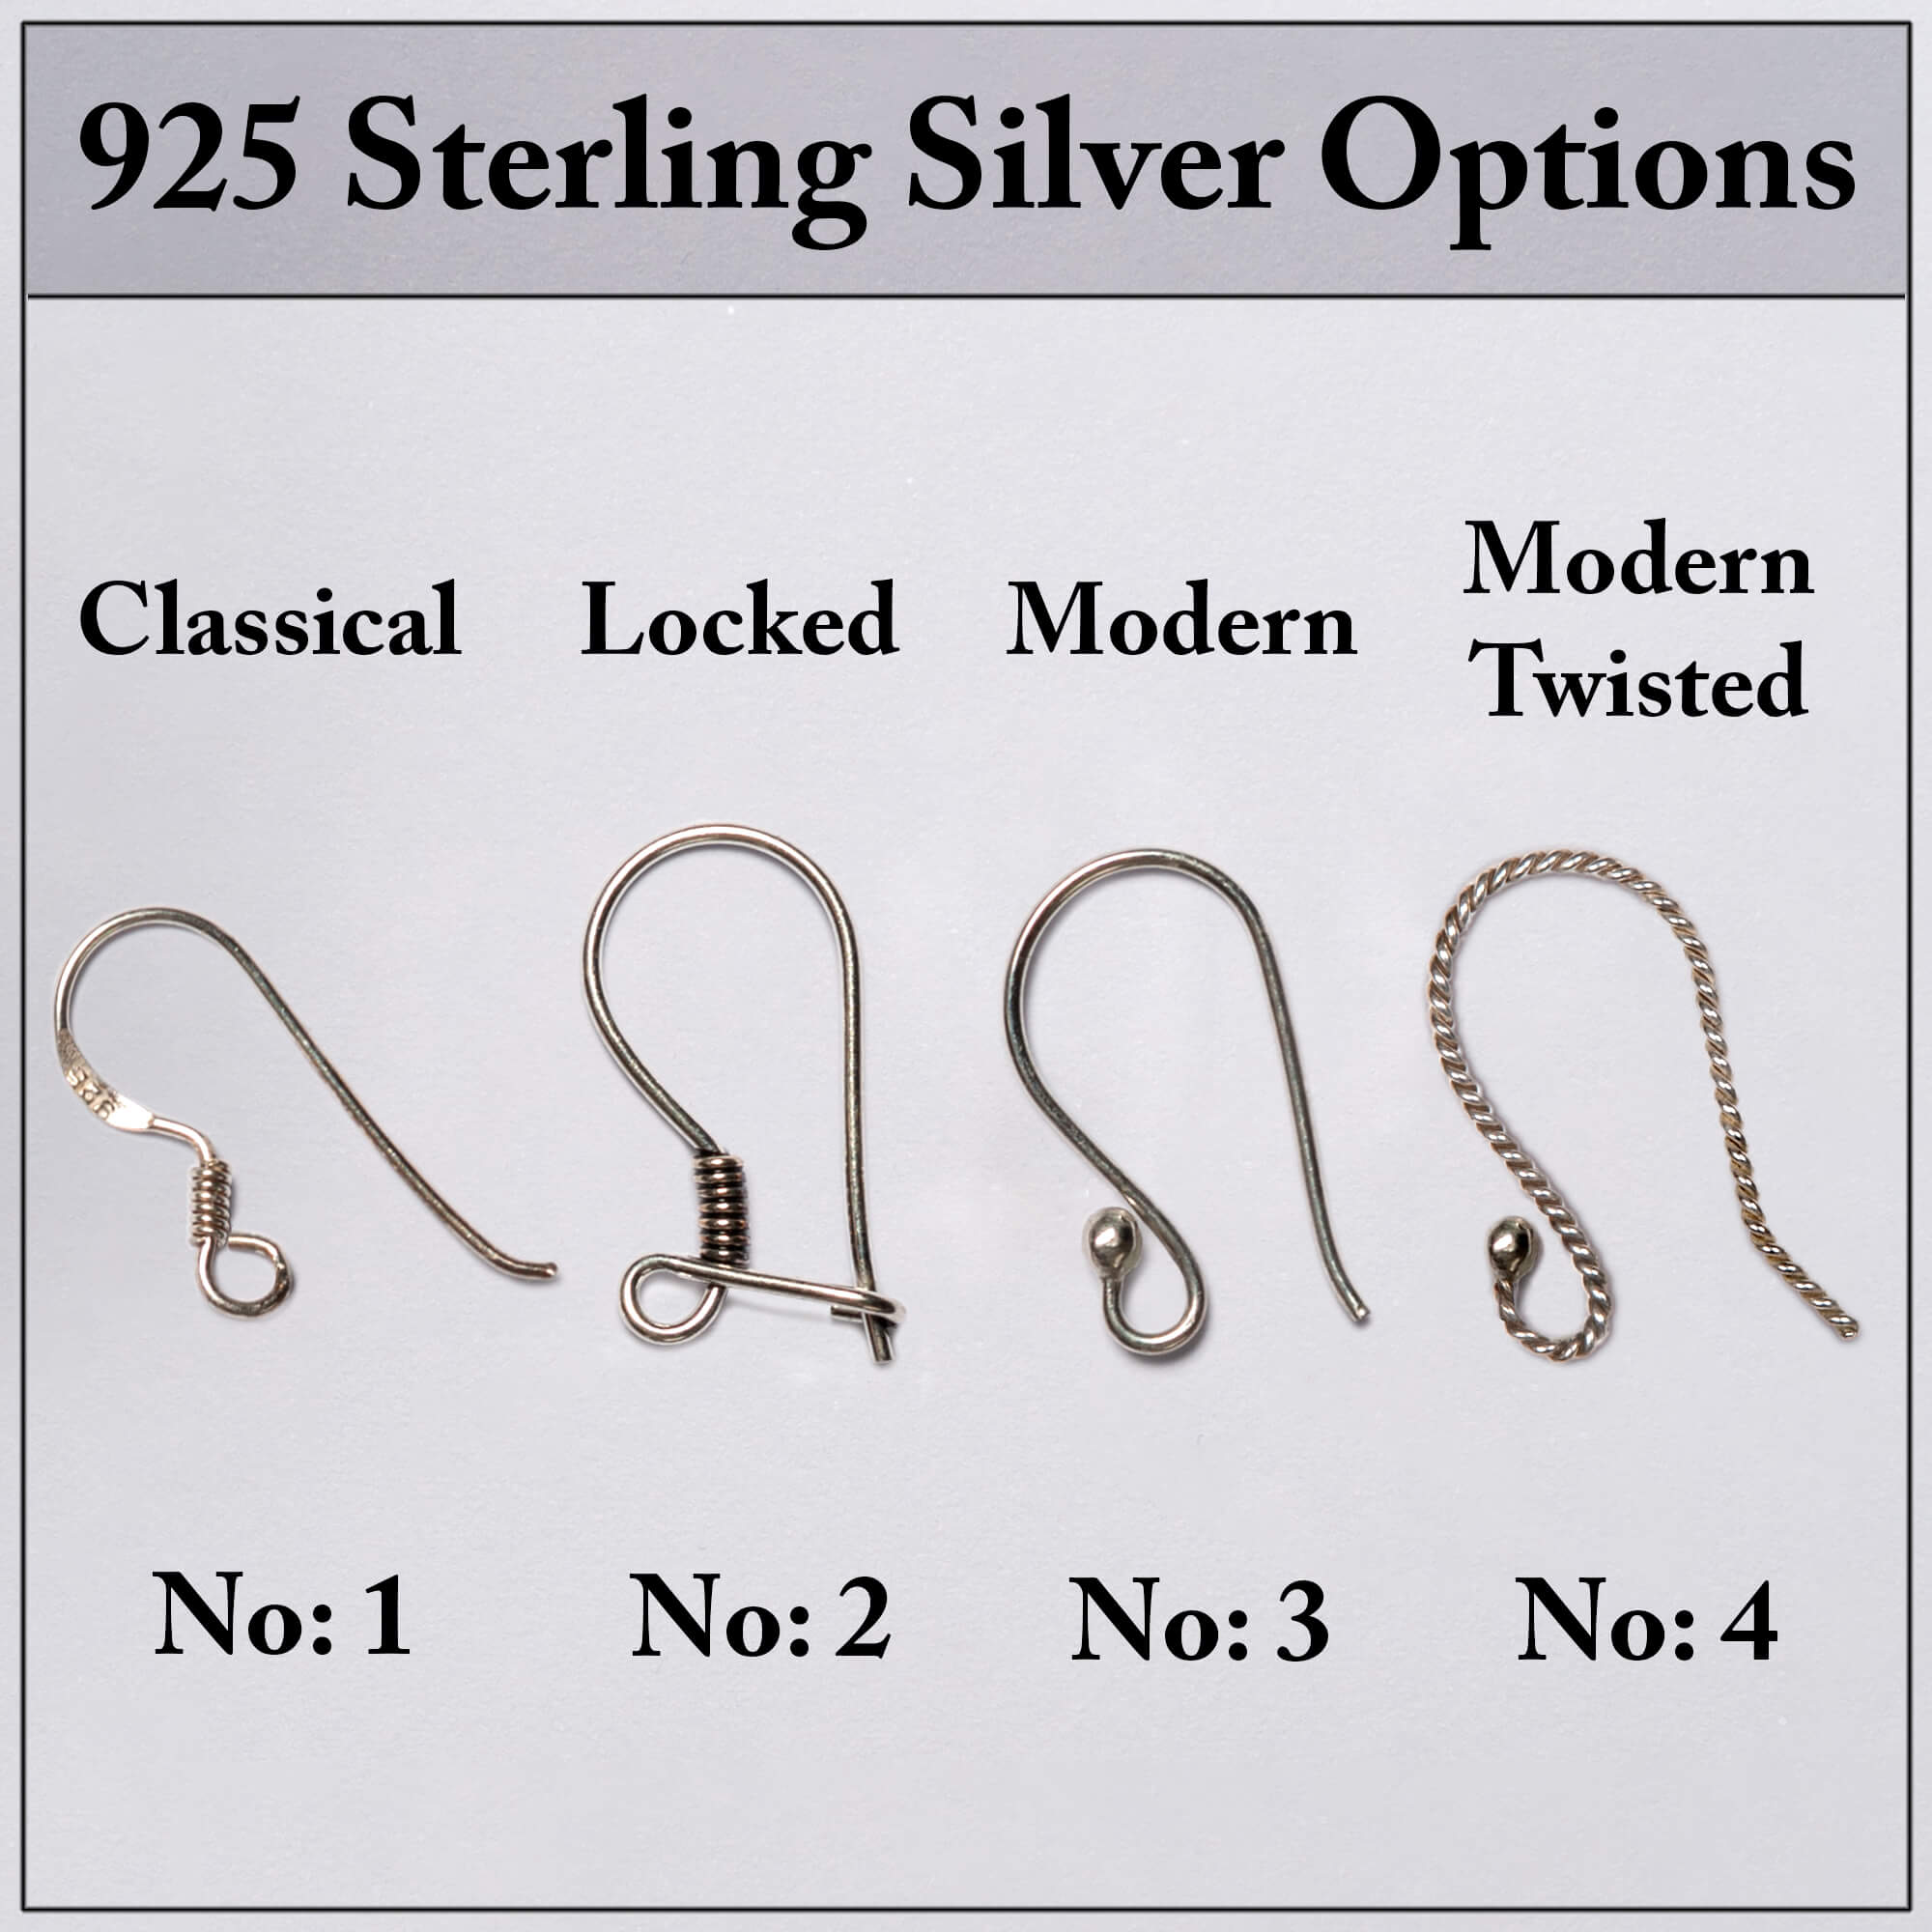 https://valeryaccessory.com/wp-content/uploads/2023/01/sterling-earrings-hook-option.jpg